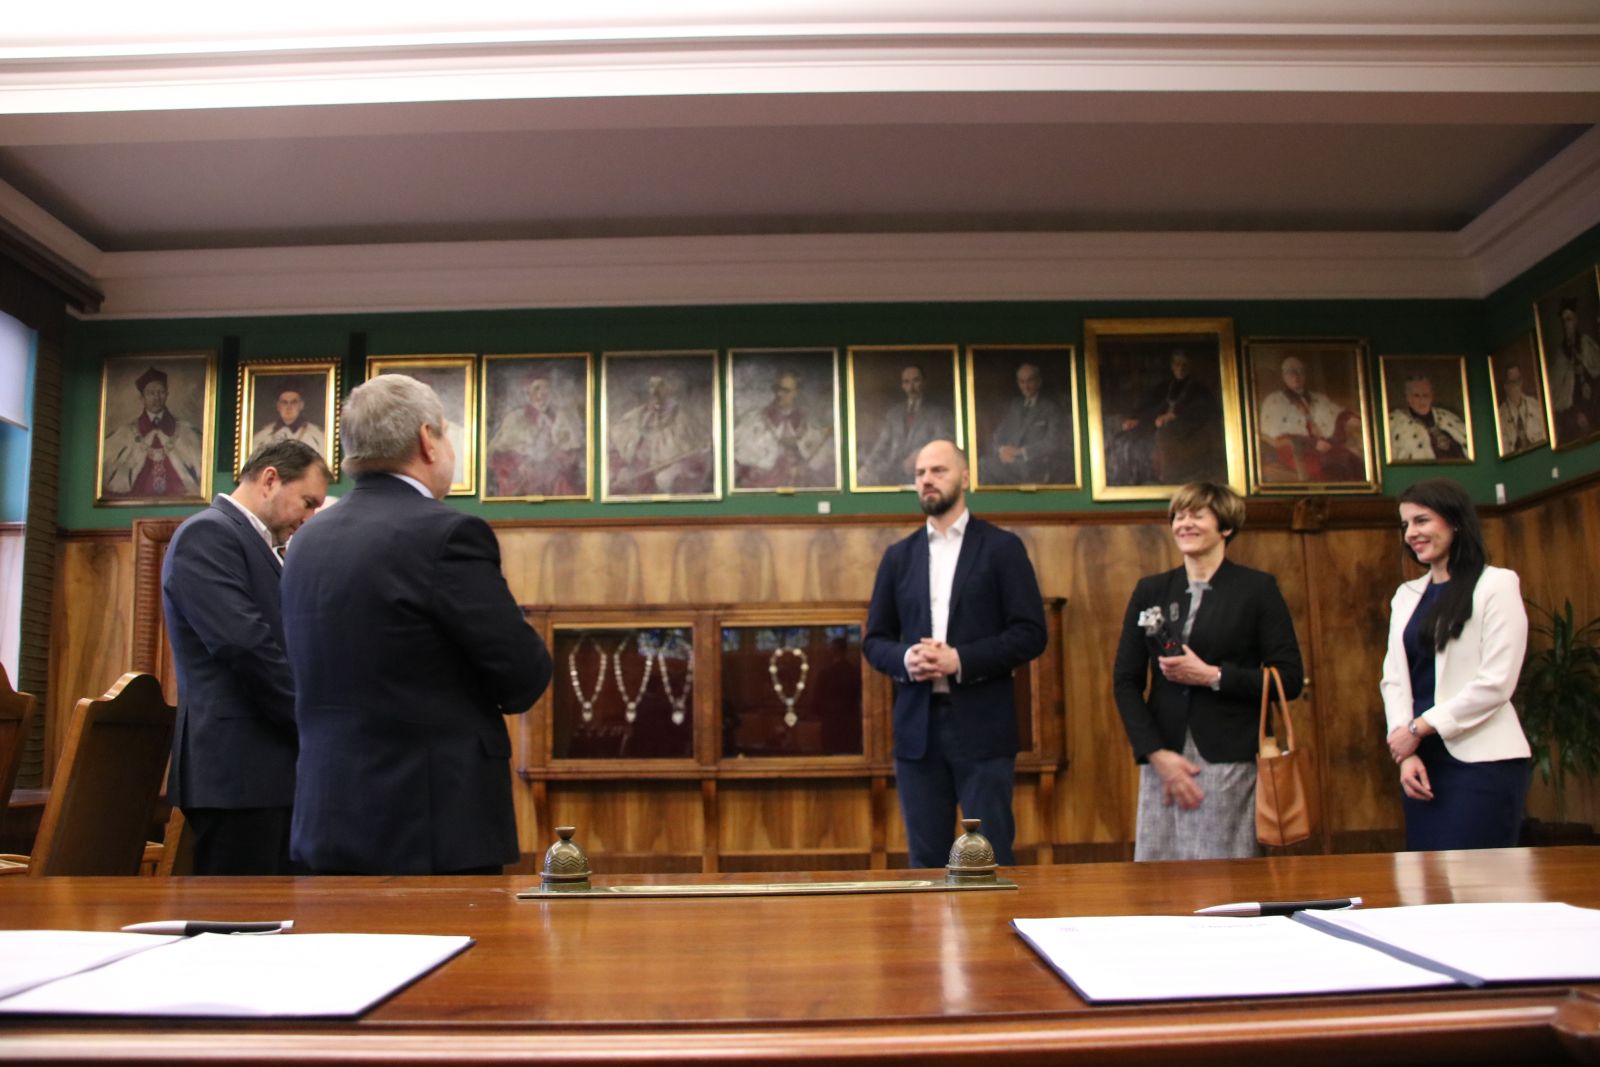 Podpisanie umowy o współpracy pomiędzy UAM a firmą Beyond.pl odbyło się w Gabinecie Rektora